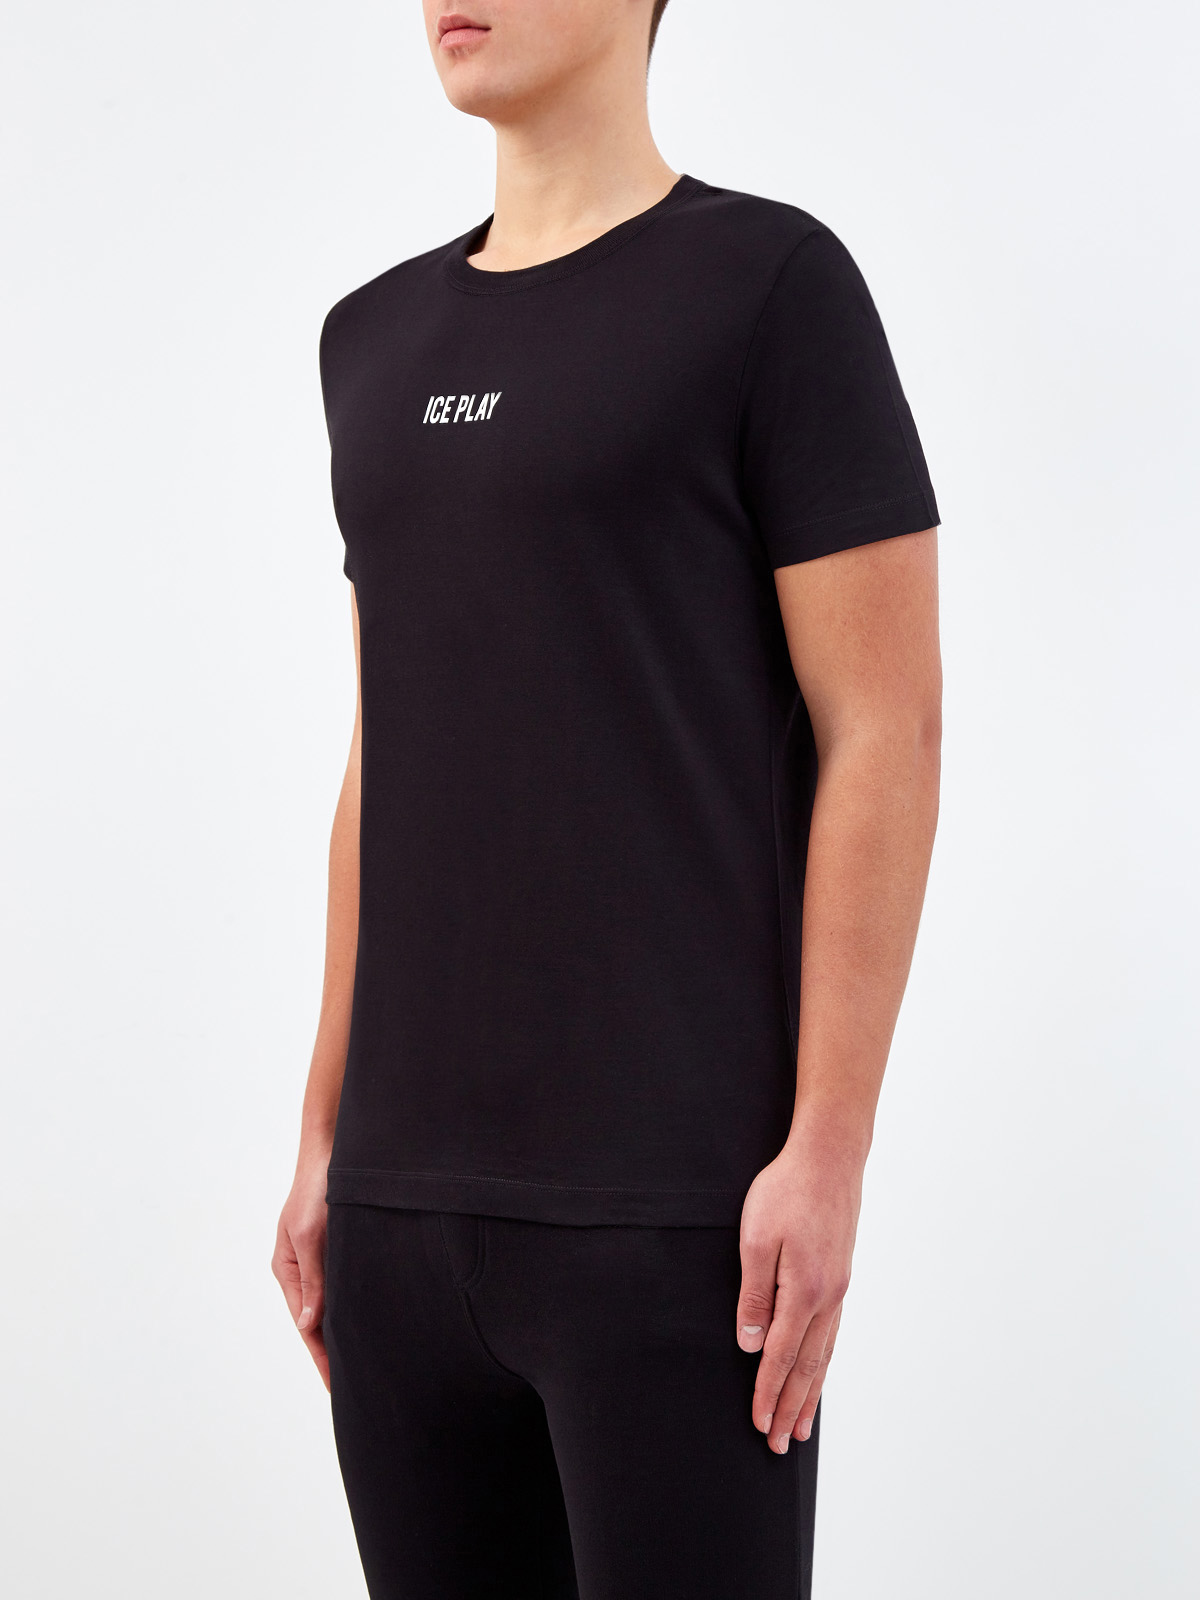 Монохромная футболка из гладкого хлопкового джерси ICE PLAY, цвет черный, размер S;M;L;XL - фото 3